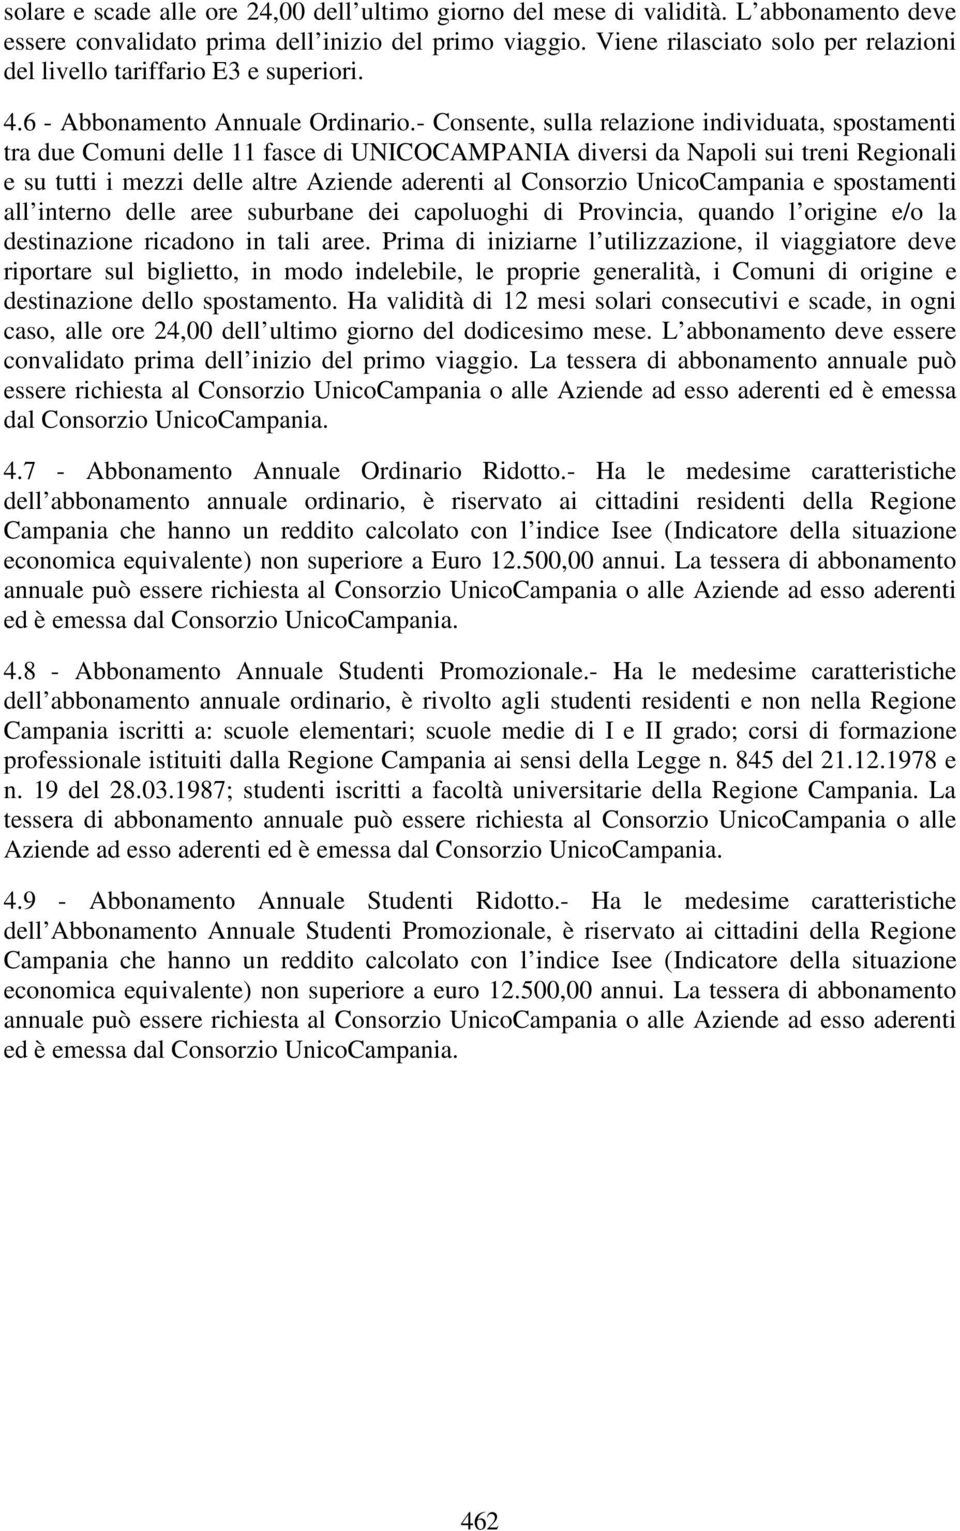 - Consente, sulla relazione individuata, spostamenti tra due Comuni delle 11 fasce di UNICOCAMPANIA diversi da Napoli sui treni Regionali e su tutti i mezzi delle altre Aziende aderenti al Consorzio